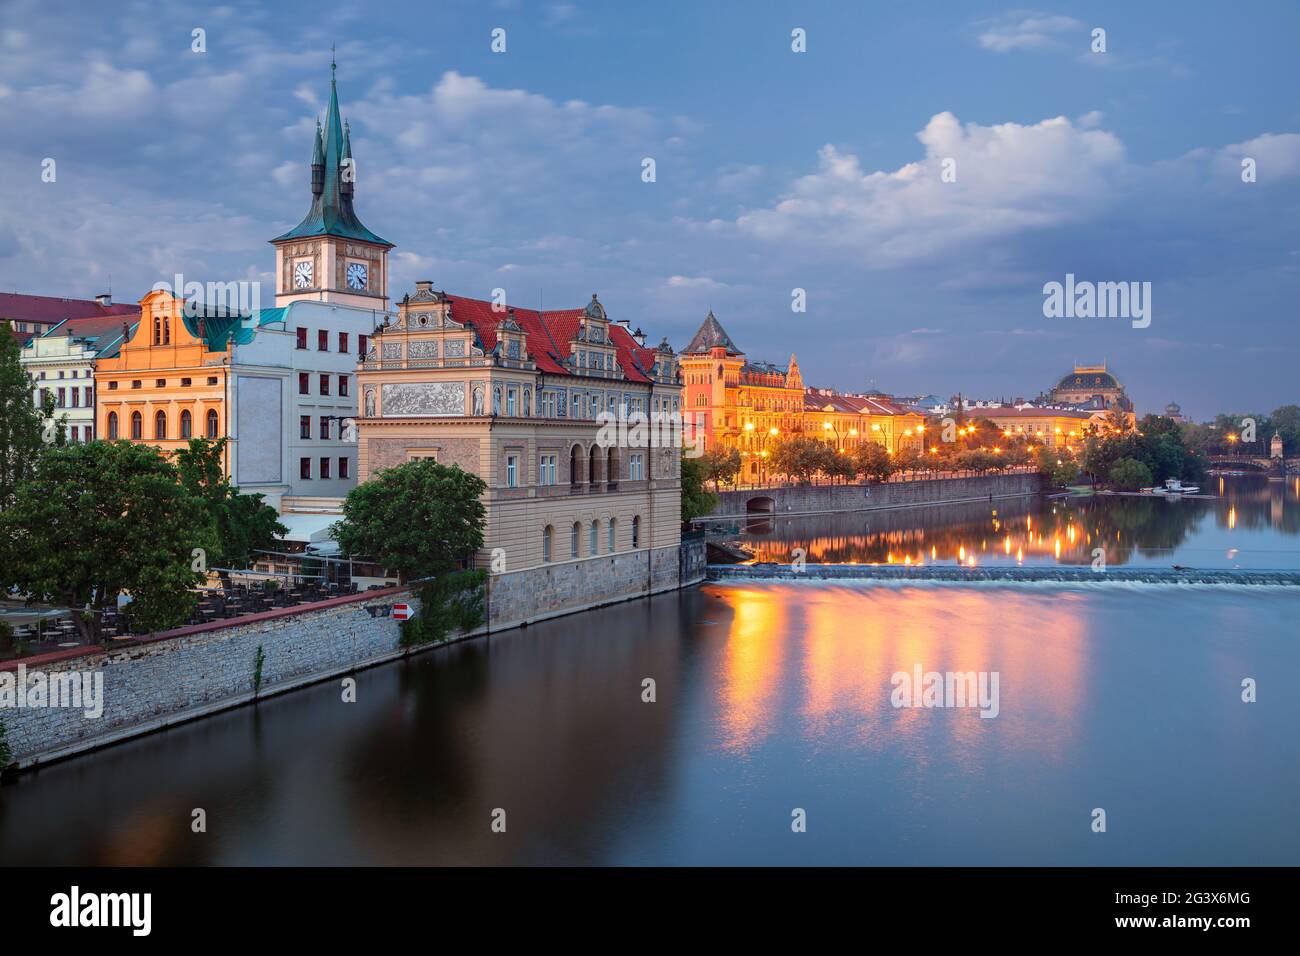 Riverside de Prague. Image du paysage urbain du bord de la rivière Prague avec la tour d'eau de la vieille ville à l'heure bleue au crépuscule. Banque D'Images